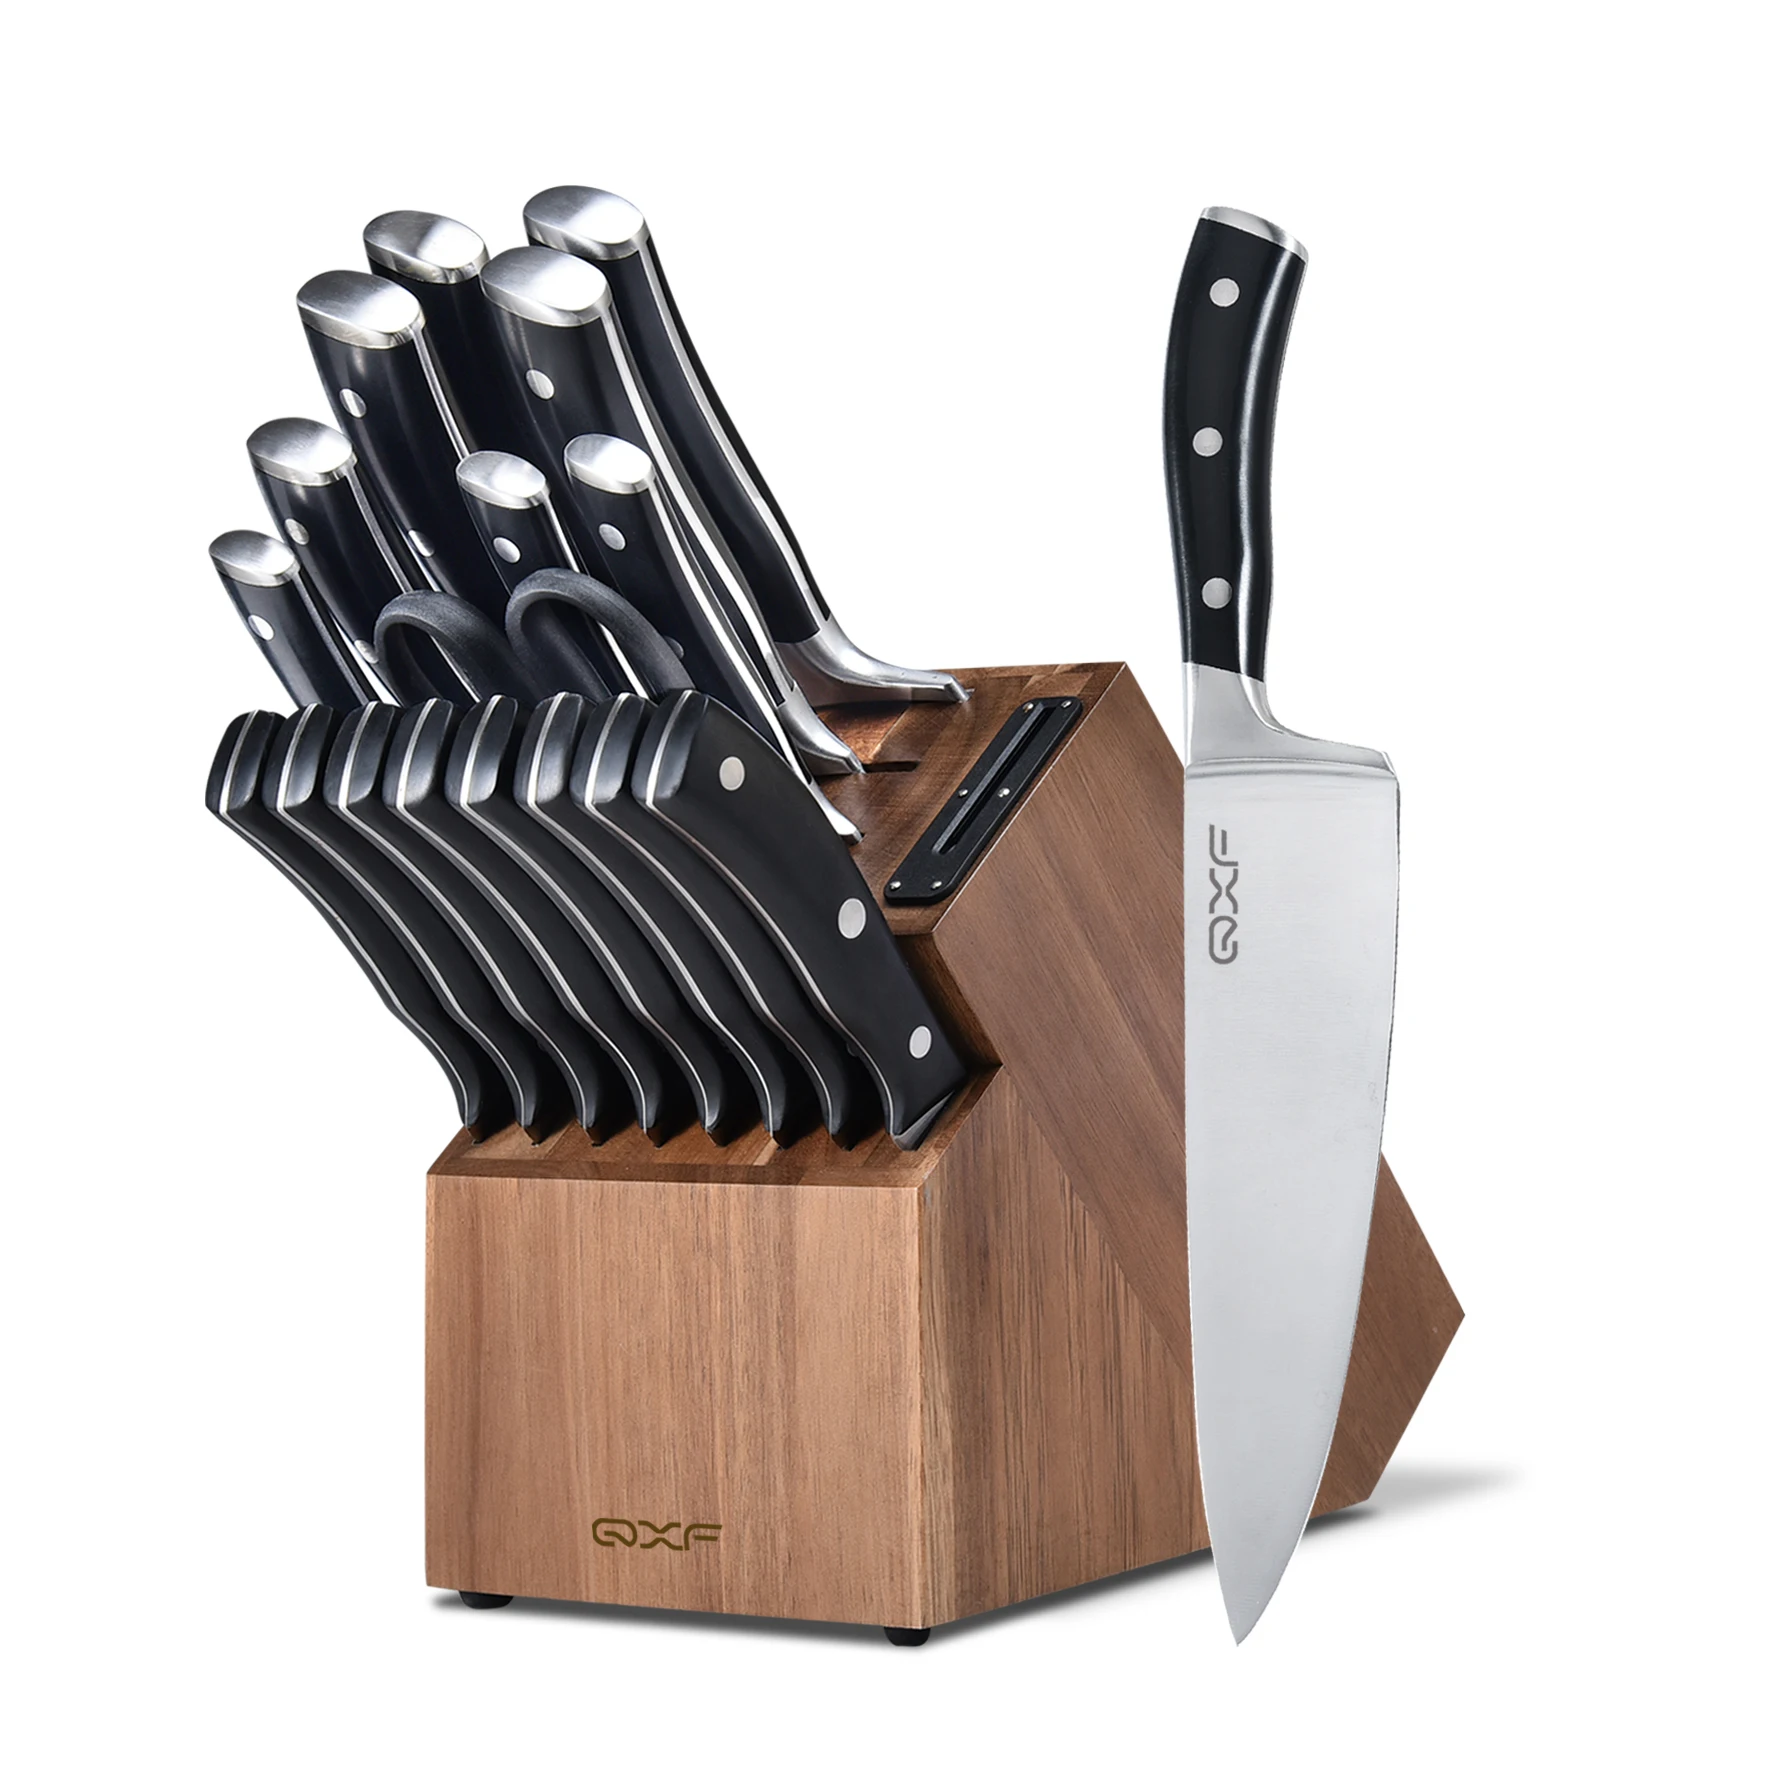 С высоким содержанием углерода немецкий из нержавеющей стали, покрытой 18 шт набор кухонных ножей супер острый нож шеф повара набор с блоком ножей